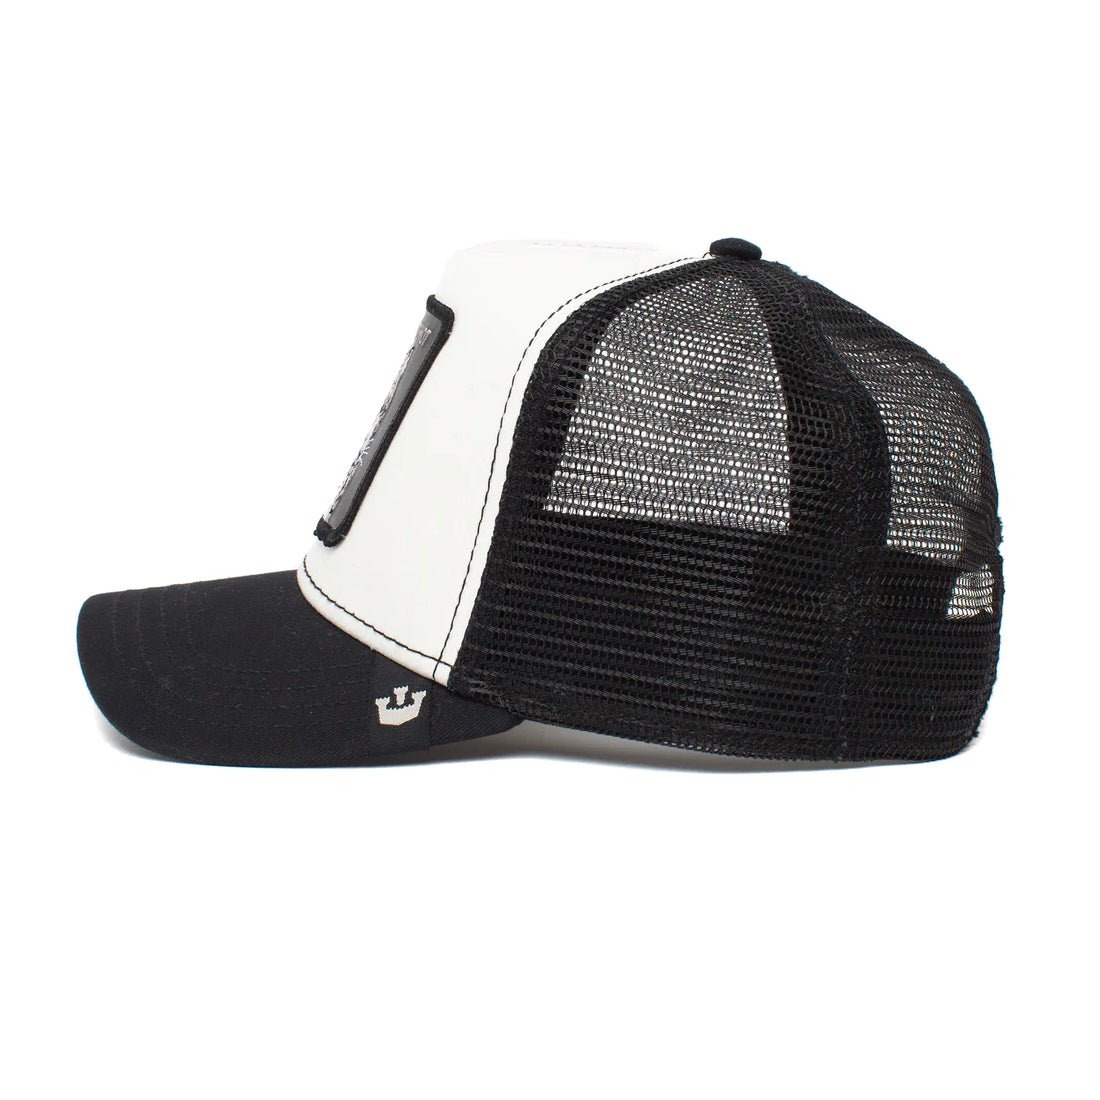 Queue Caps Hotshot Cap - Black & White - قبعة - Store 974 | ستور ٩٧٤